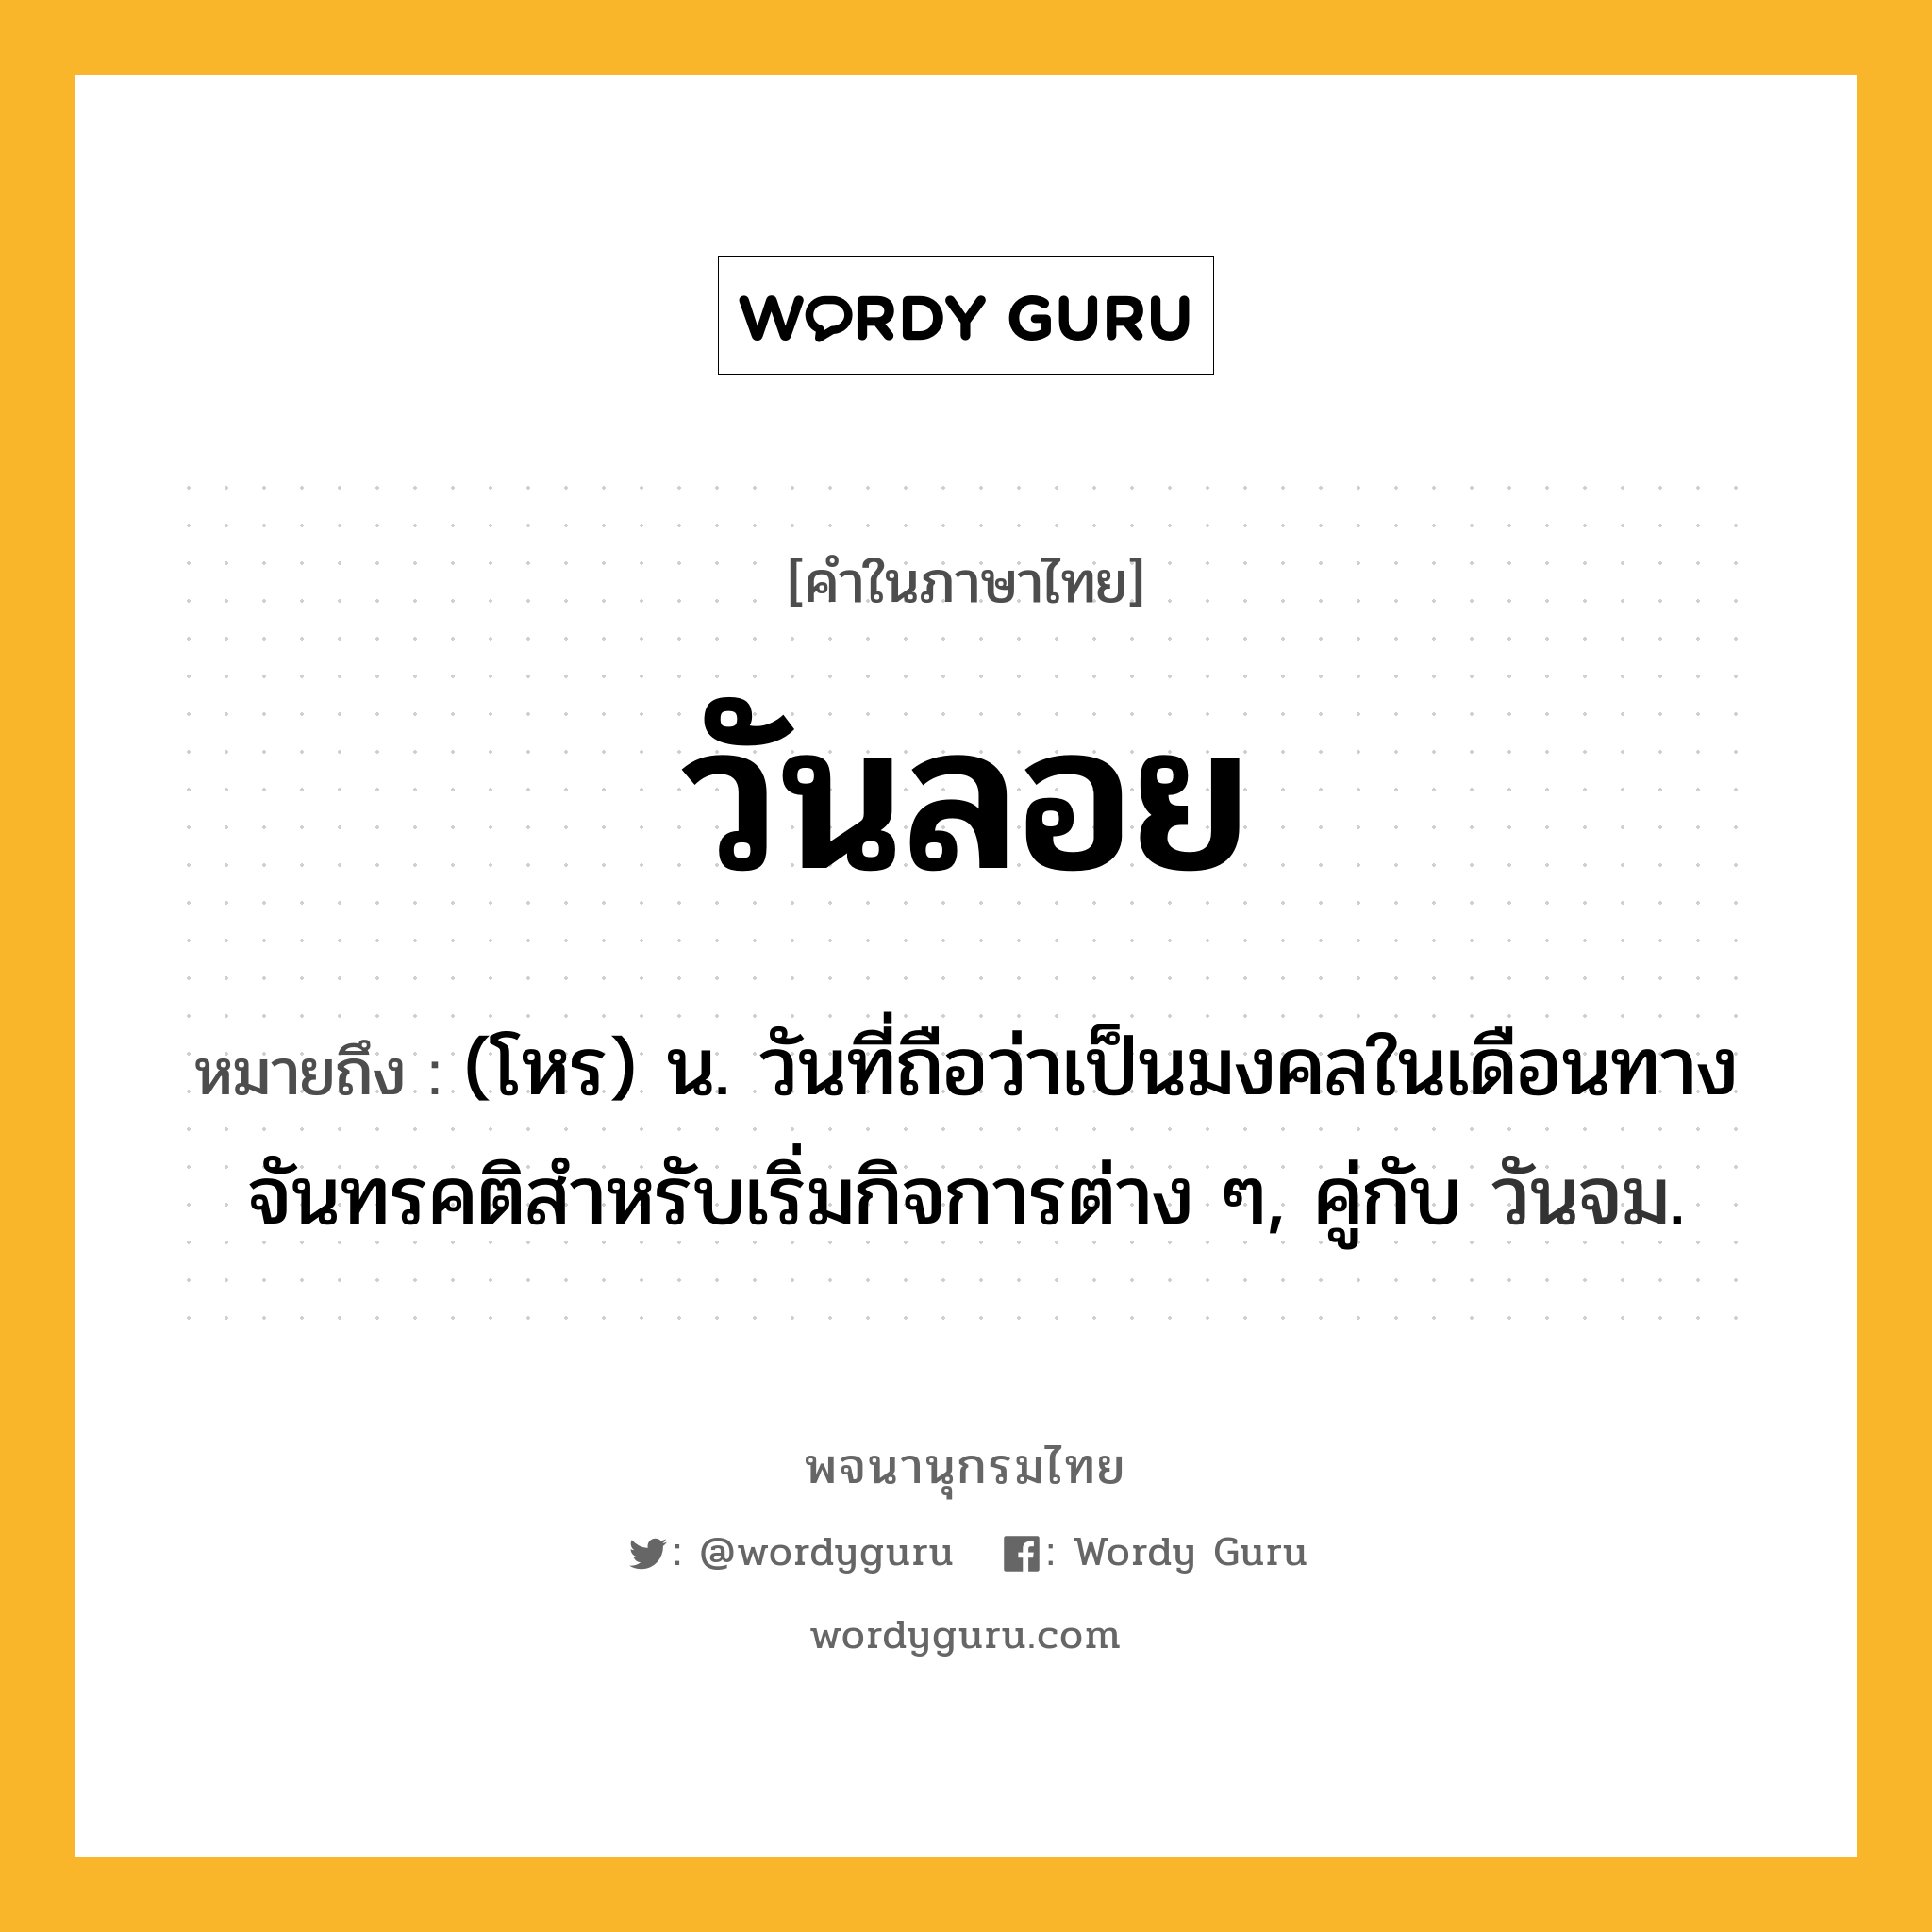 วันลอย ความหมาย หมายถึงอะไร?, คำในภาษาไทย วันลอย หมายถึง (โหร) น. วันที่ถือว่าเป็นมงคลในเดือนทางจันทรคติสําหรับเริ่มกิจการต่าง ๆ, คู่กับ วันจม.